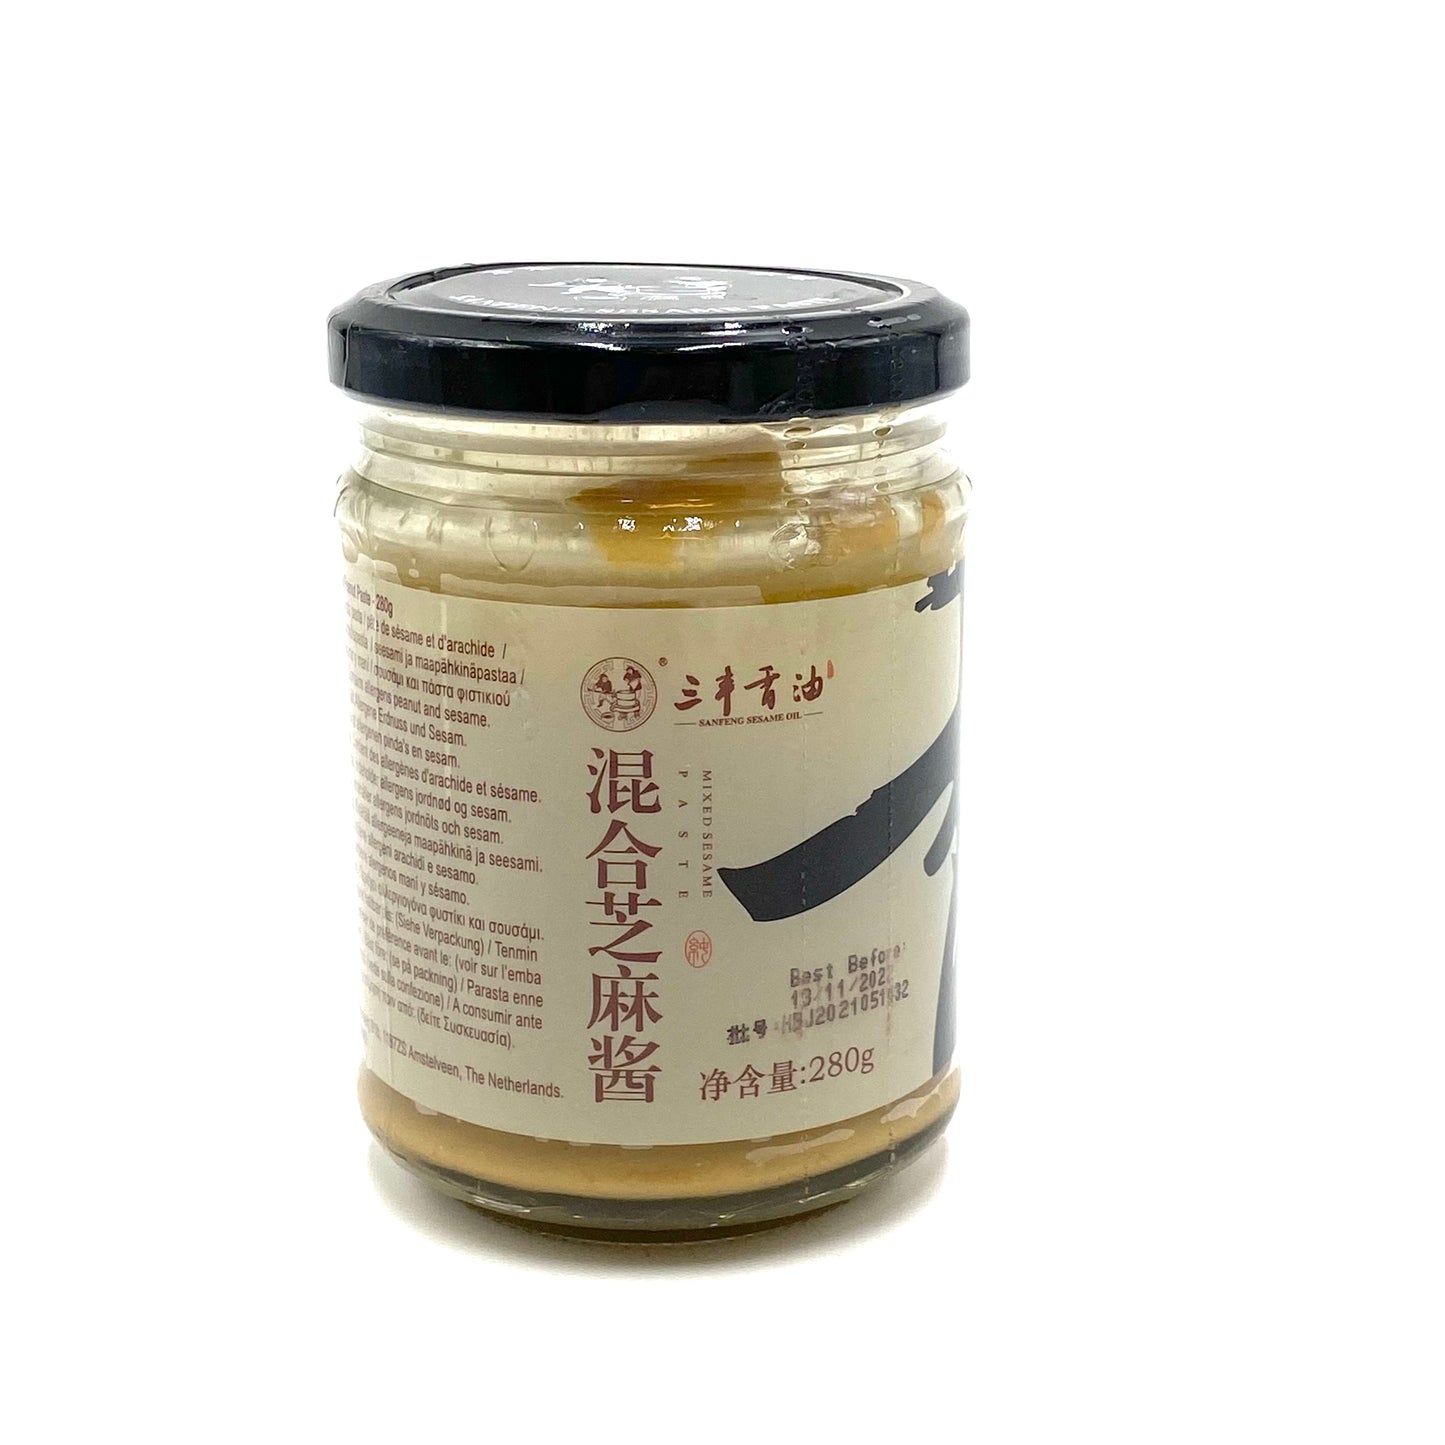 SanFeng Pasta di Sesami Misti 280g 三丰混合芝麻酱